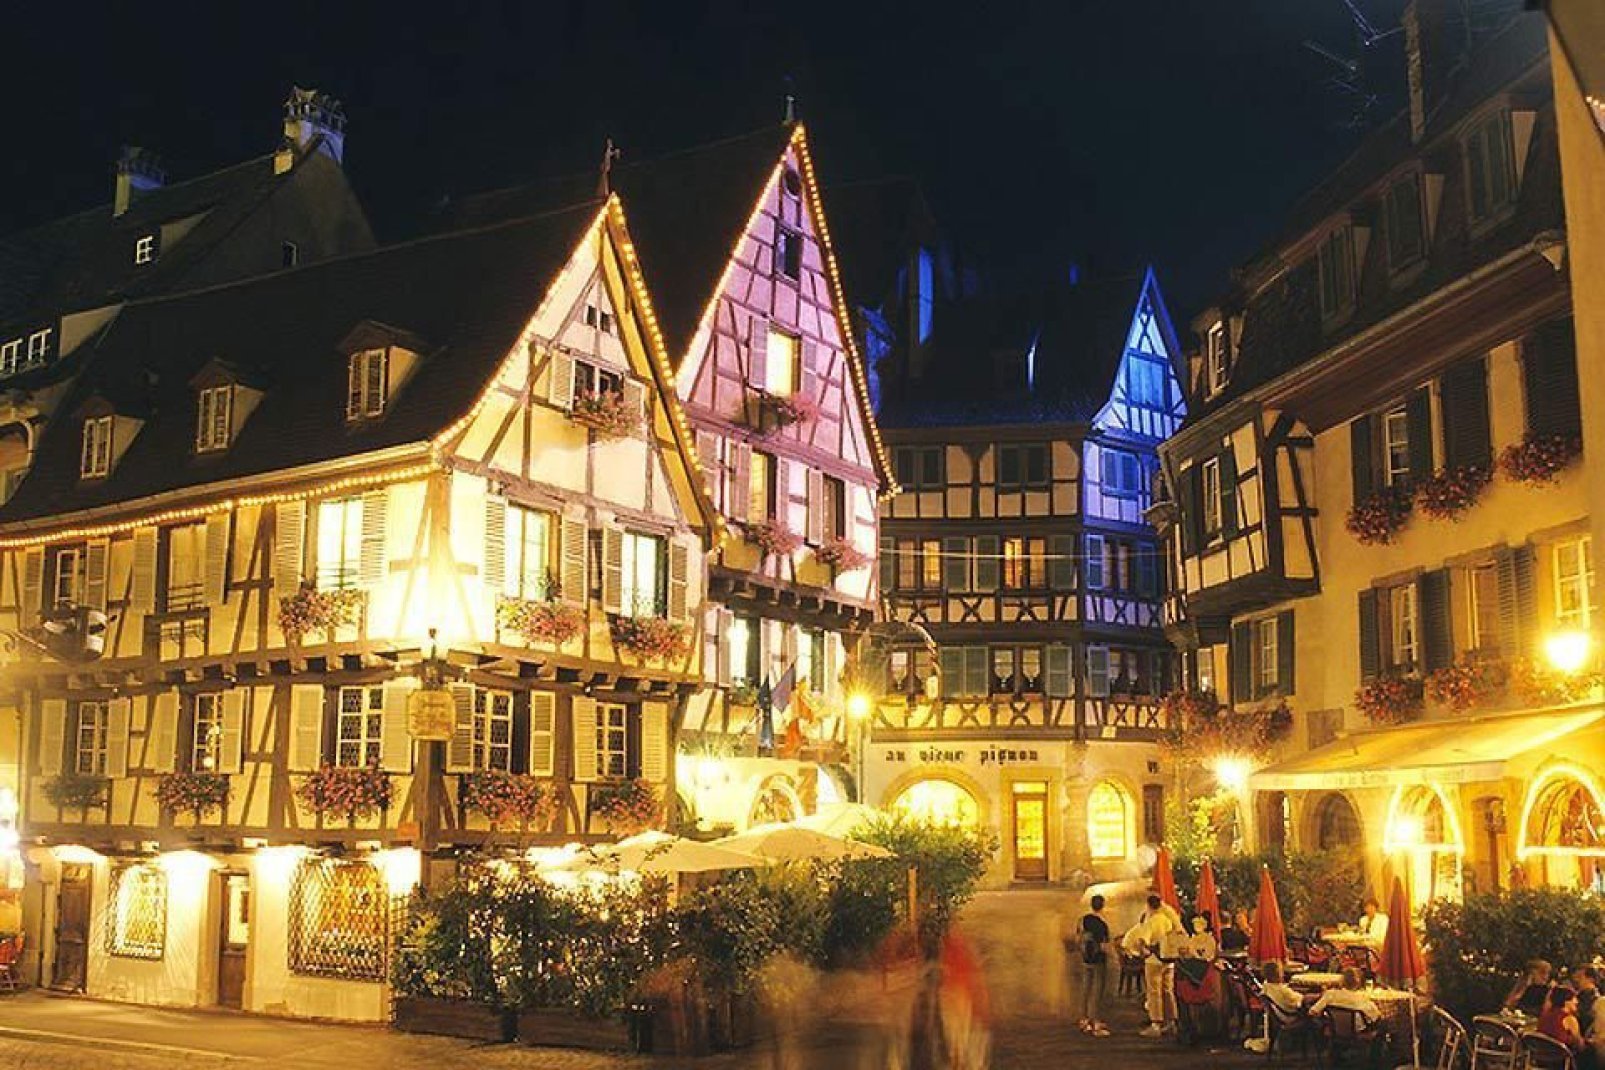 Il mercatino di Natale di Colmar è suddiviso in quattro parti. Le sontuose decorazioni che lo accompagnano, nonché la qualità dei prodotti, lo rendono uno dei più famosi di Francia.